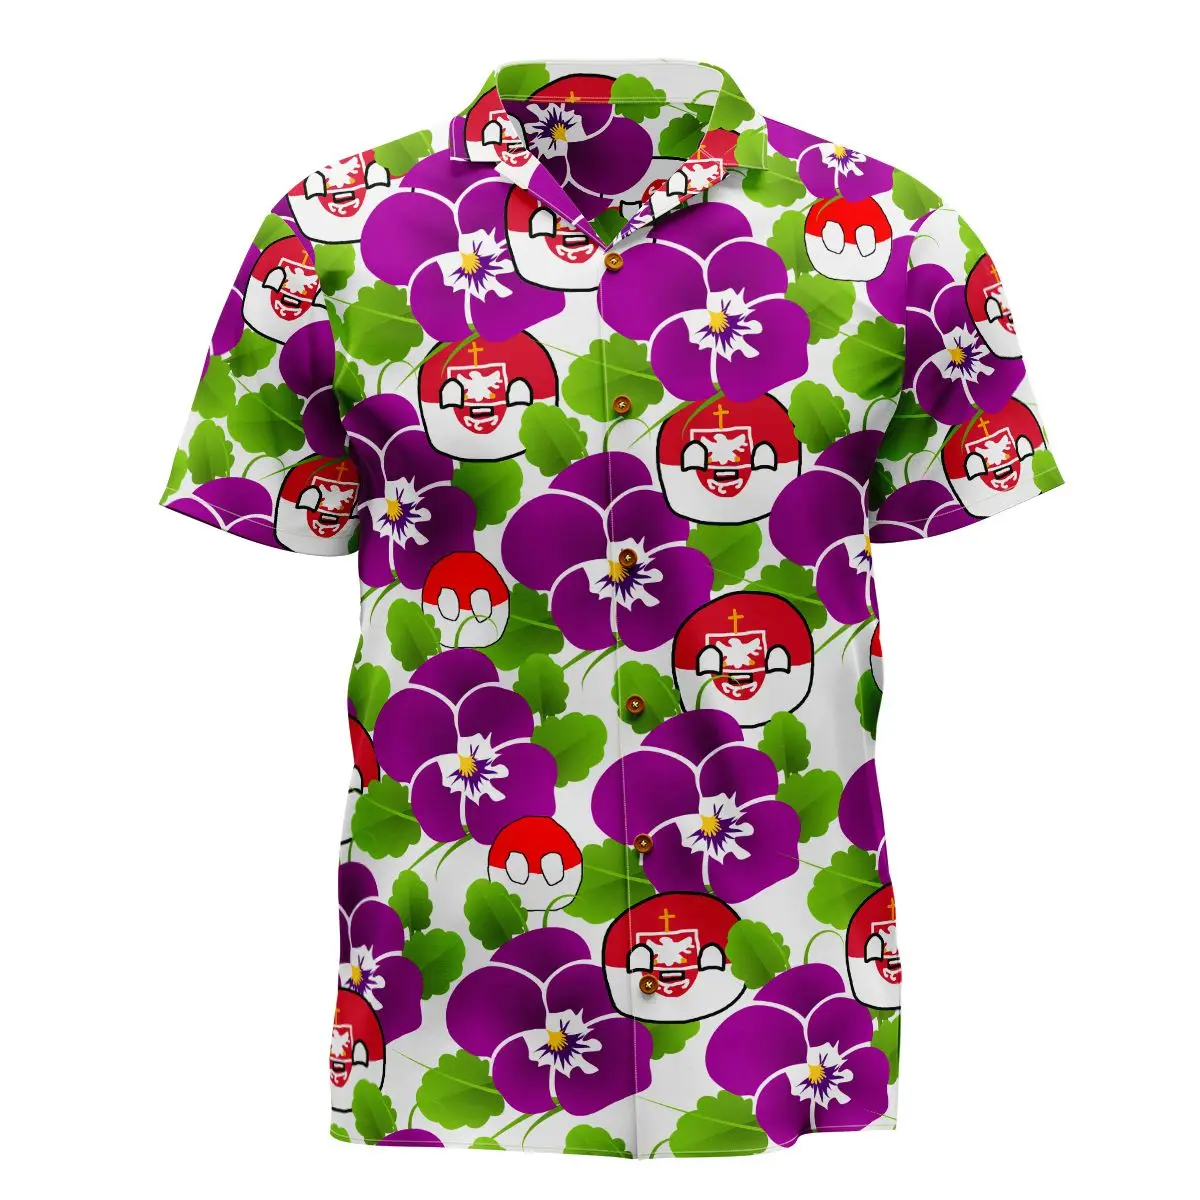 

Jumeast Polandball Pansy цветок Мужская гавайская рубашка Канадский кленовый лист пейзаж узор рубашки унисекс мешковатая одежда футболка